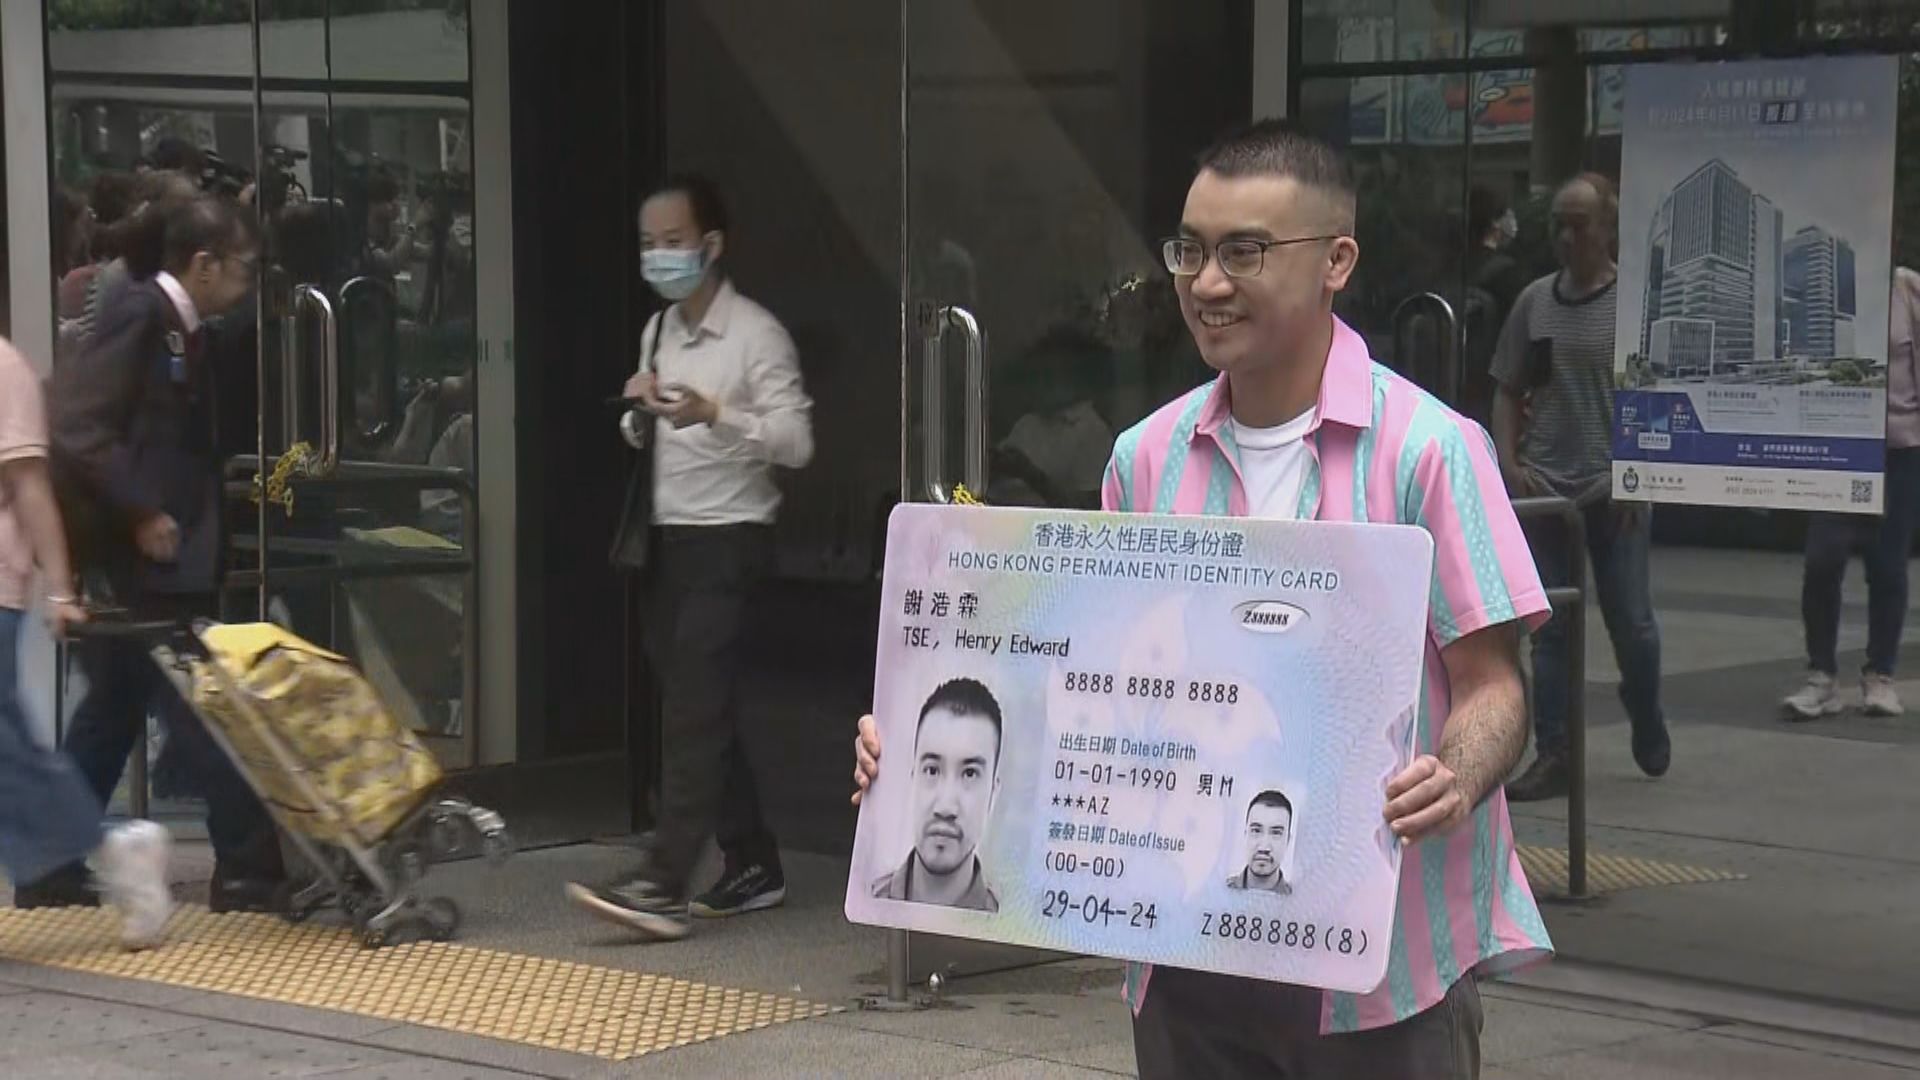 跨性別人士謝浩霖勝訴逾一年始獲批男性身份證 稱會追究政府拖延